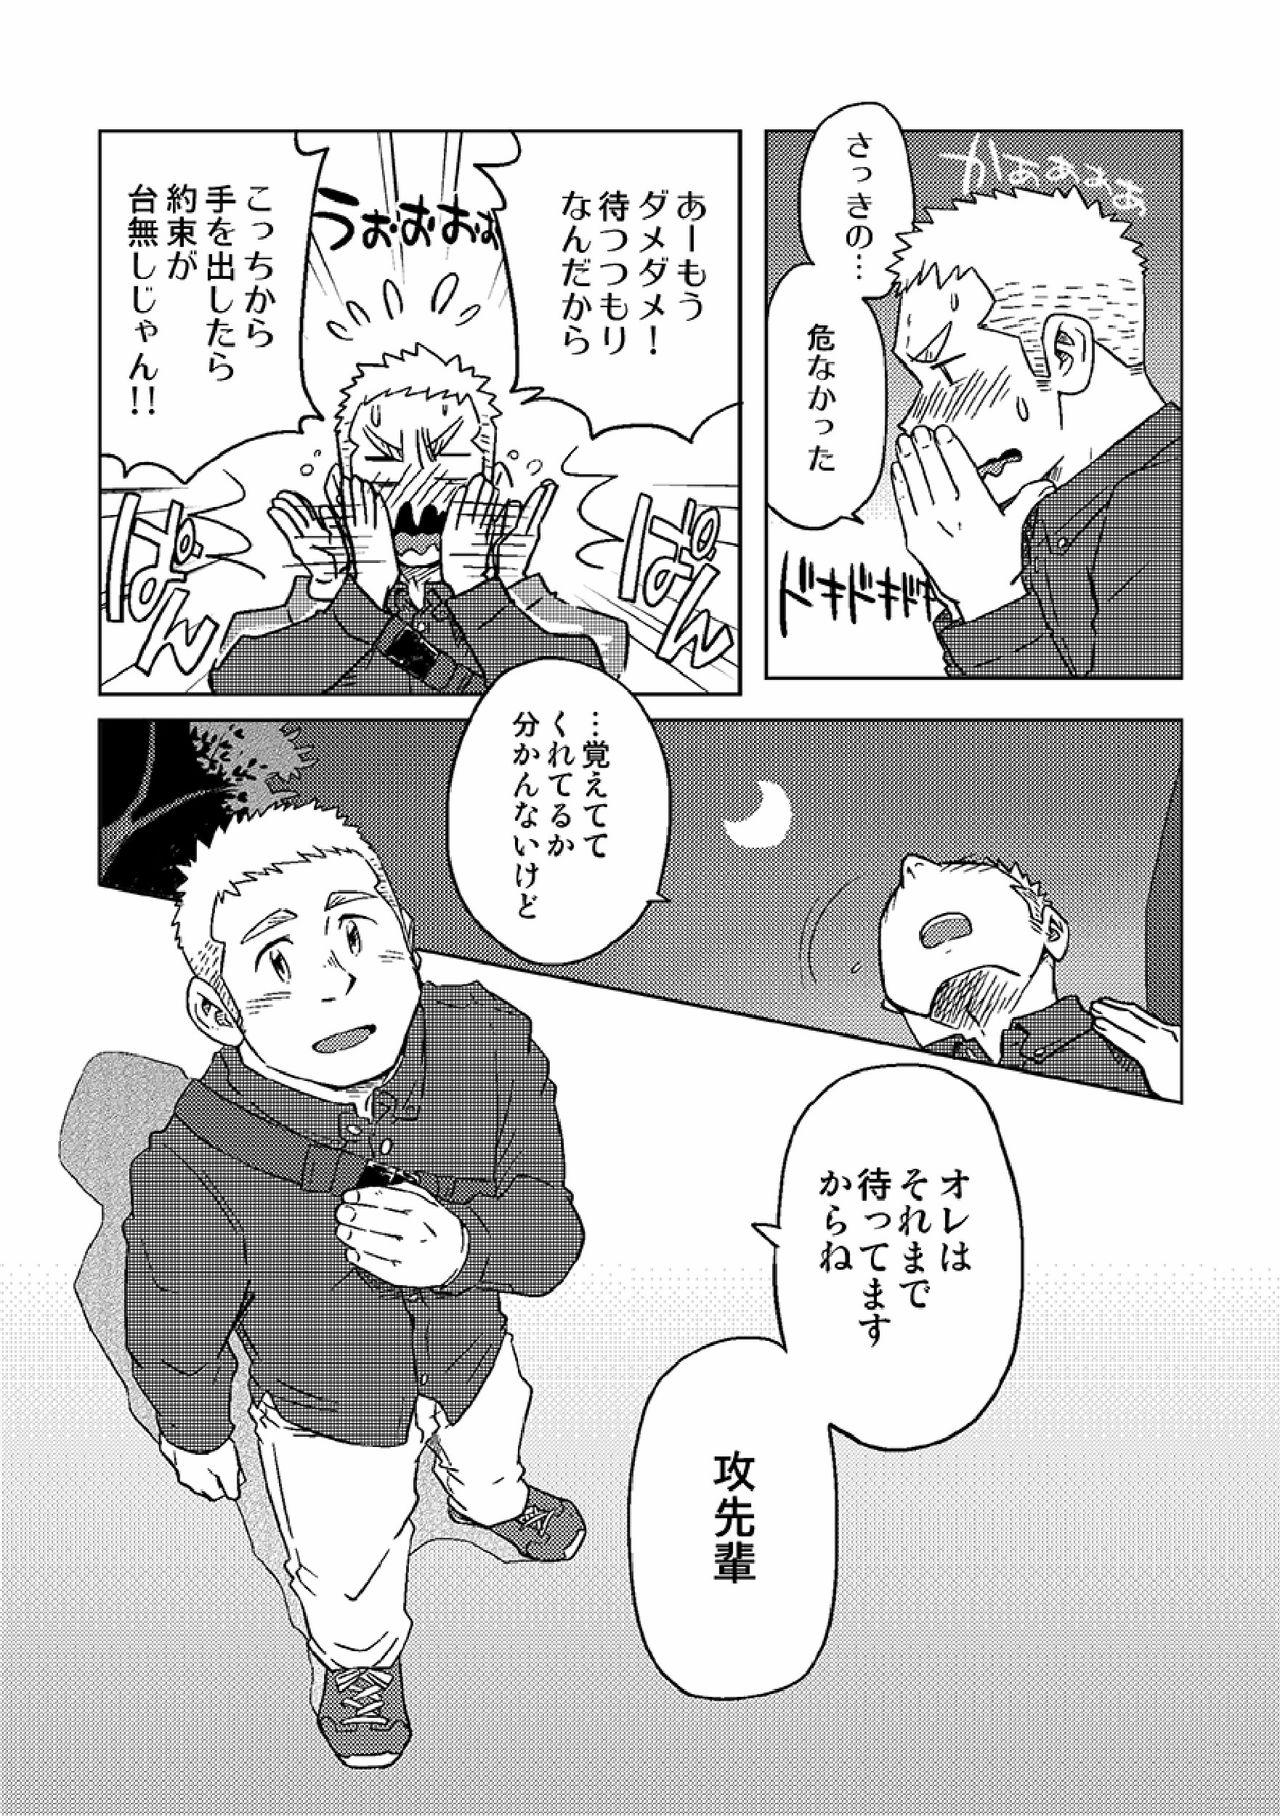 Pissing Gachi Homo Senshi Tsunagi Moon Tokubetsuhen Tsuki no Noboru Maeni - Original Smooth - Page 10